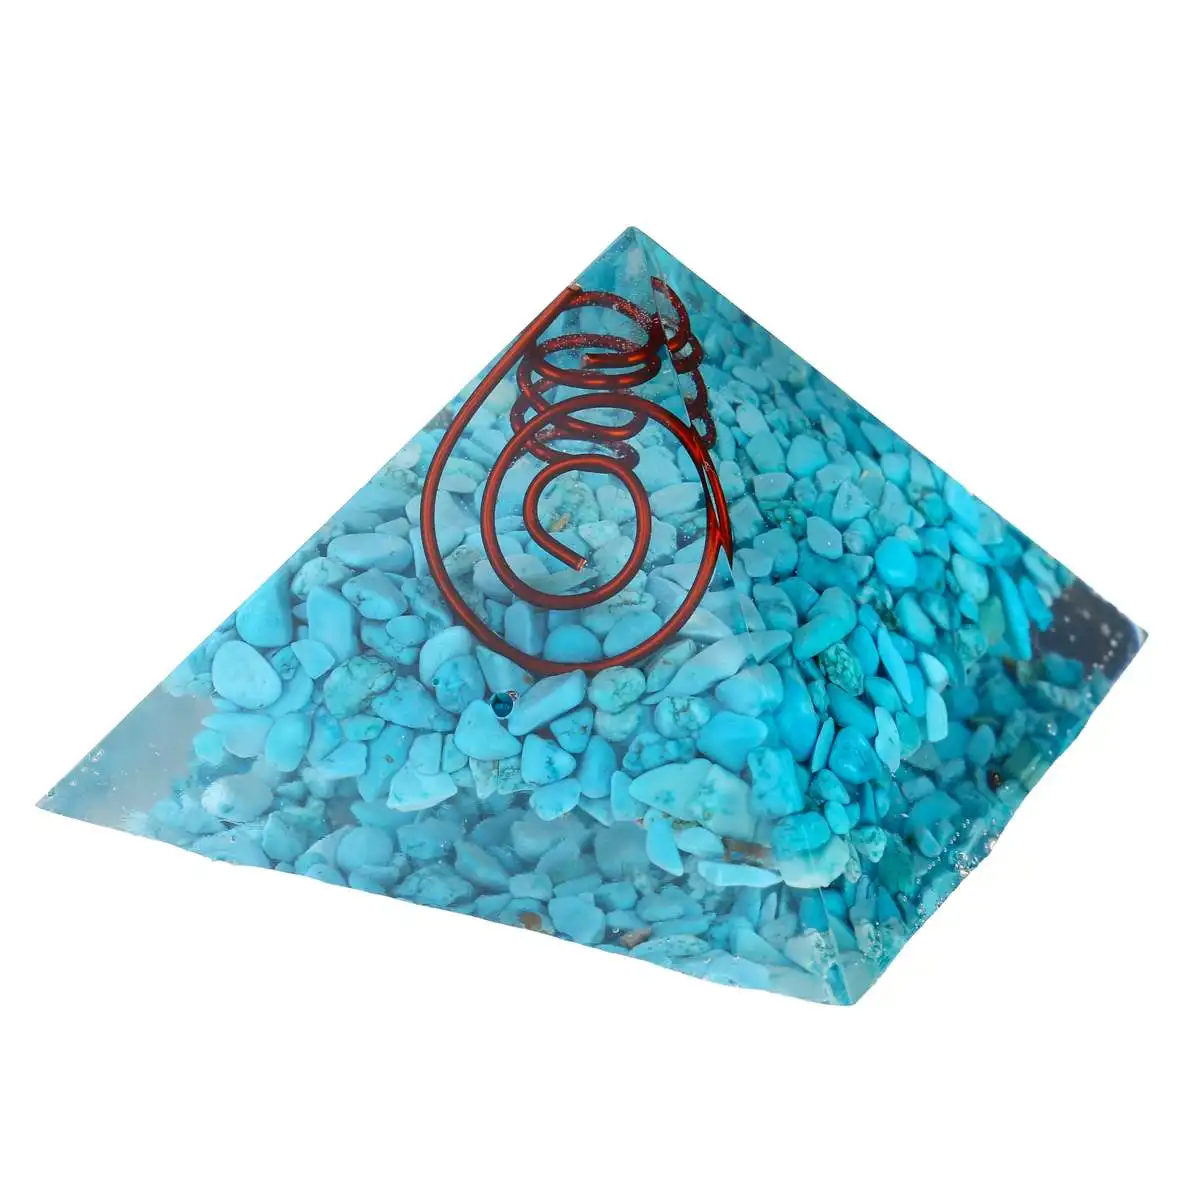 60-75 мм натуральный кристалл кварца пирамида ТОЧКА столб Резной Камень Чакра орнамент целебный Кристалл Природный камень коробки и шкатулки декоративные ручной работы